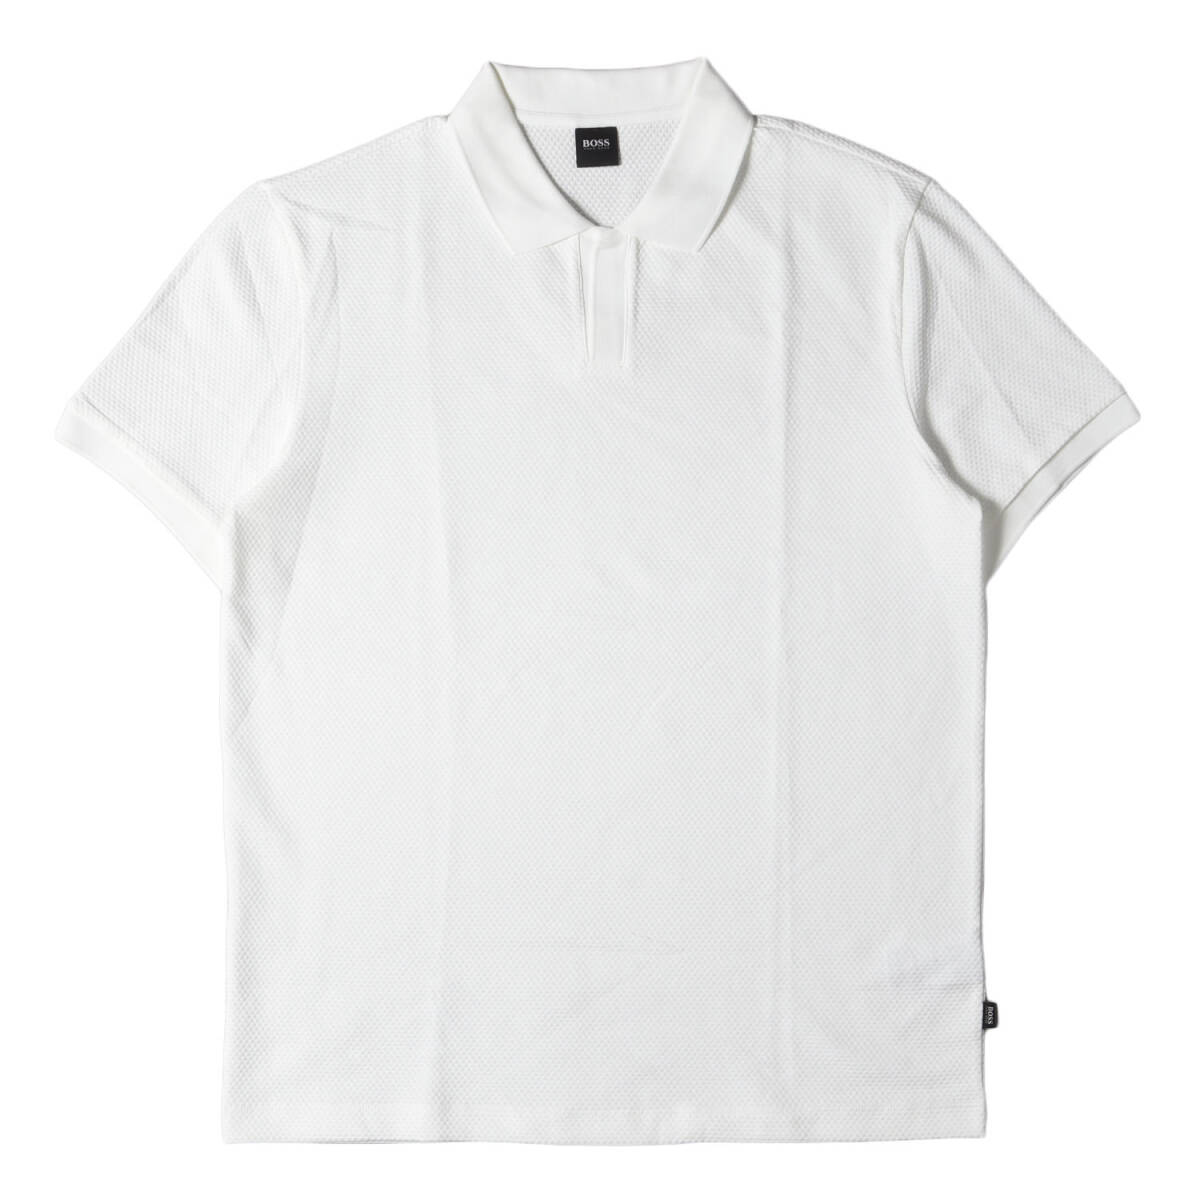 新品同様 HUGO BOSS ヒューゴボス ポロシャツ サイズ:XL ハニカム ストレッチ スキッパー 半袖ポロシャツ ホワイト 白 トップスの画像1